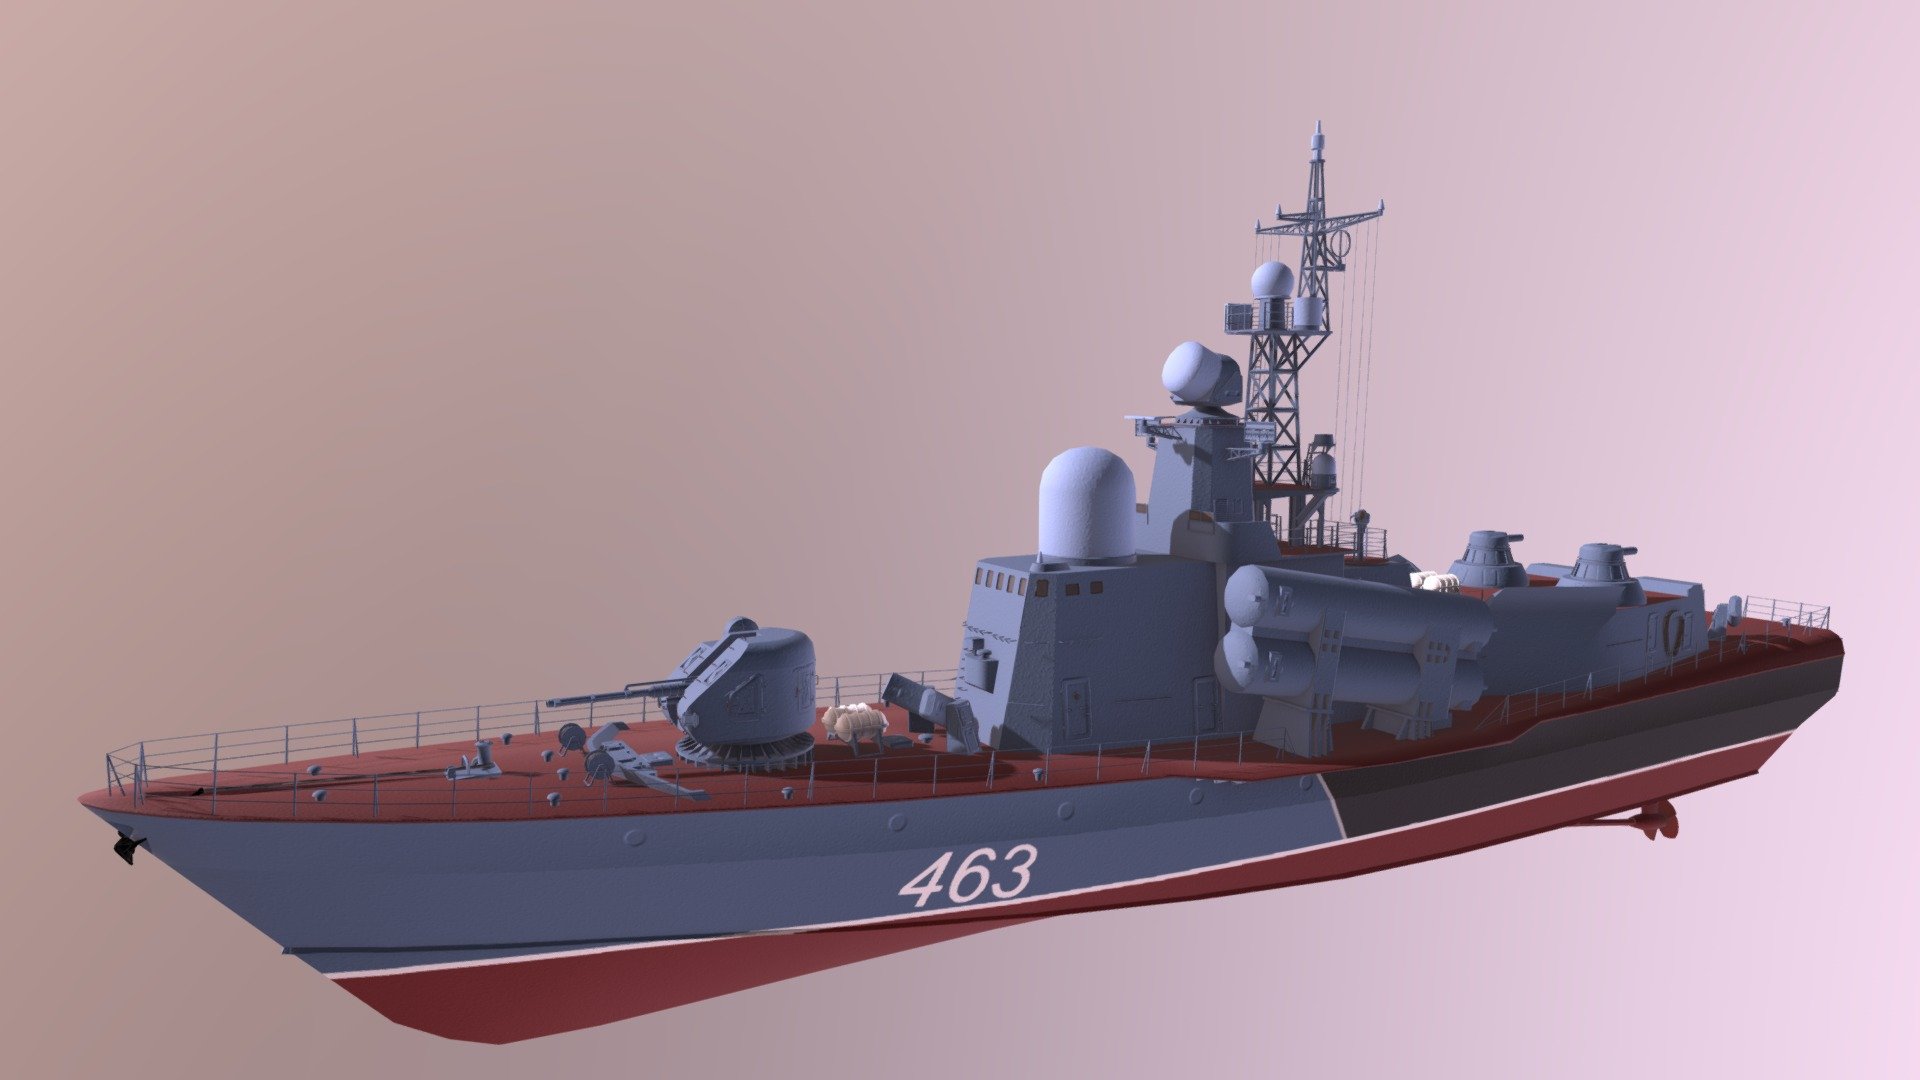 Missile boat P1241 - P1241 - 3D model by pokudinev 3d model